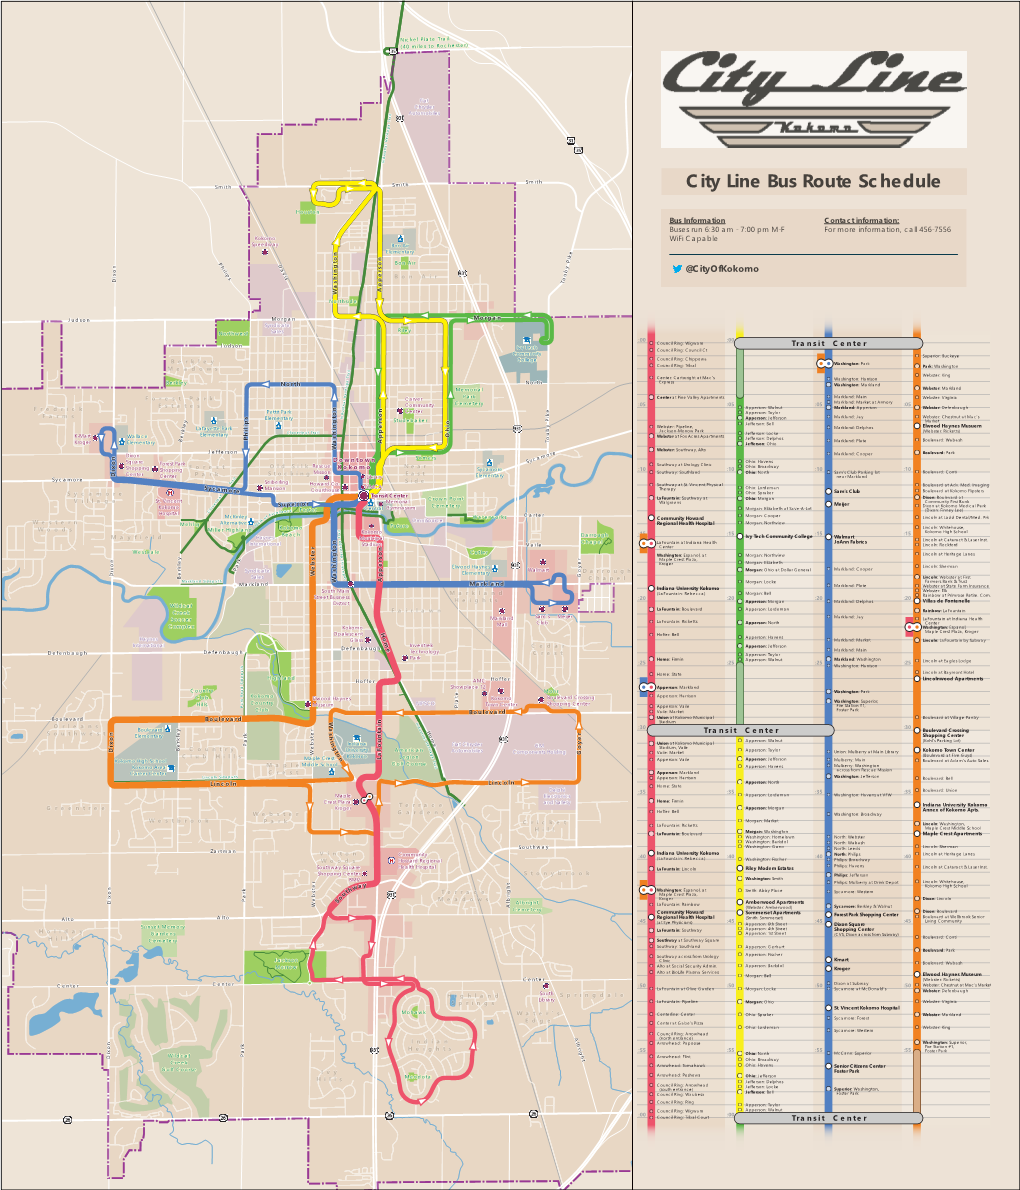 City Line Bus Route Schedule